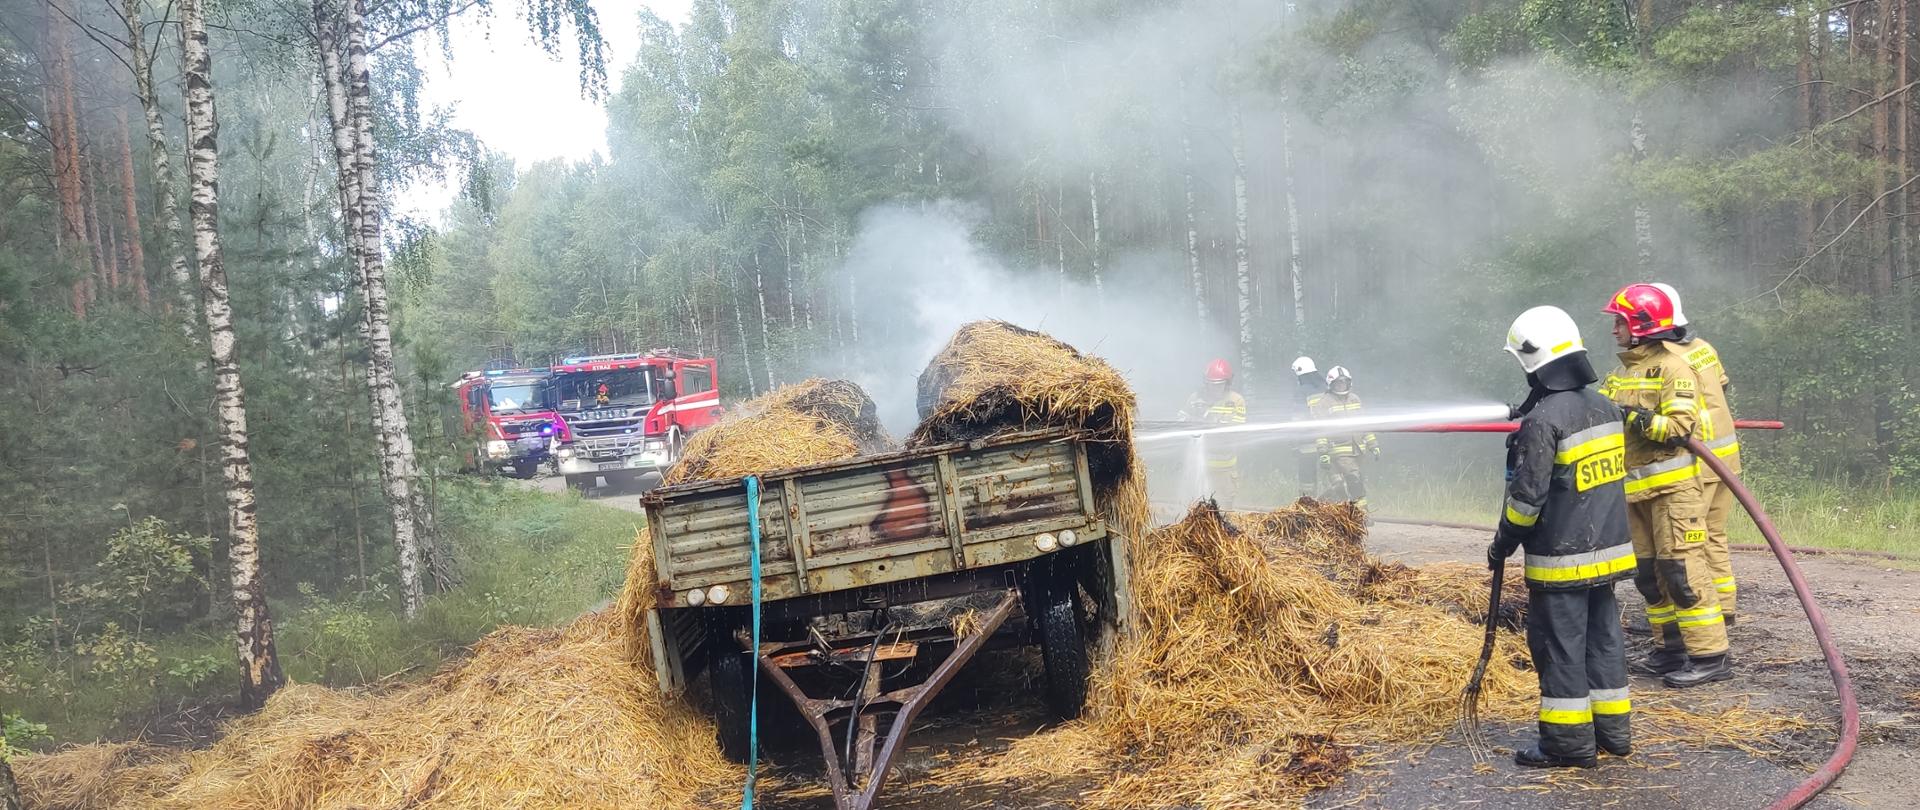 Na zdjęciu dymiąca się słoma na przyczepie rolniczej. Prądy wody podawane są przez umundurowanych ratowników. Zdjęcie w ciągu dnia. Na drodze.